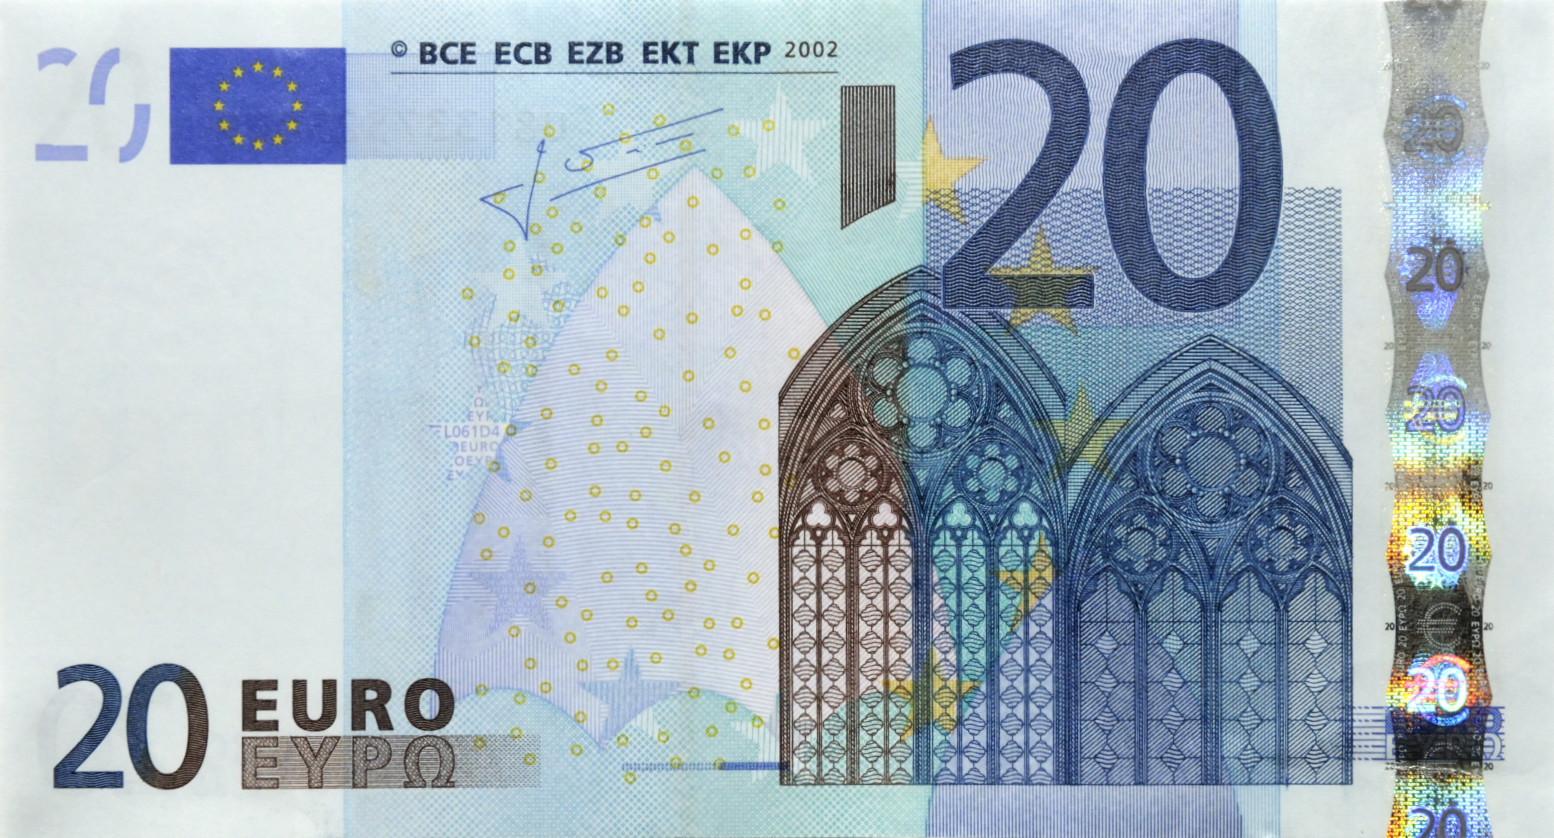 Банкнота 2002 года номиналом 20 евро: цвет – синий, архитектурный стиль – готический. Источник http://raznie.ru/